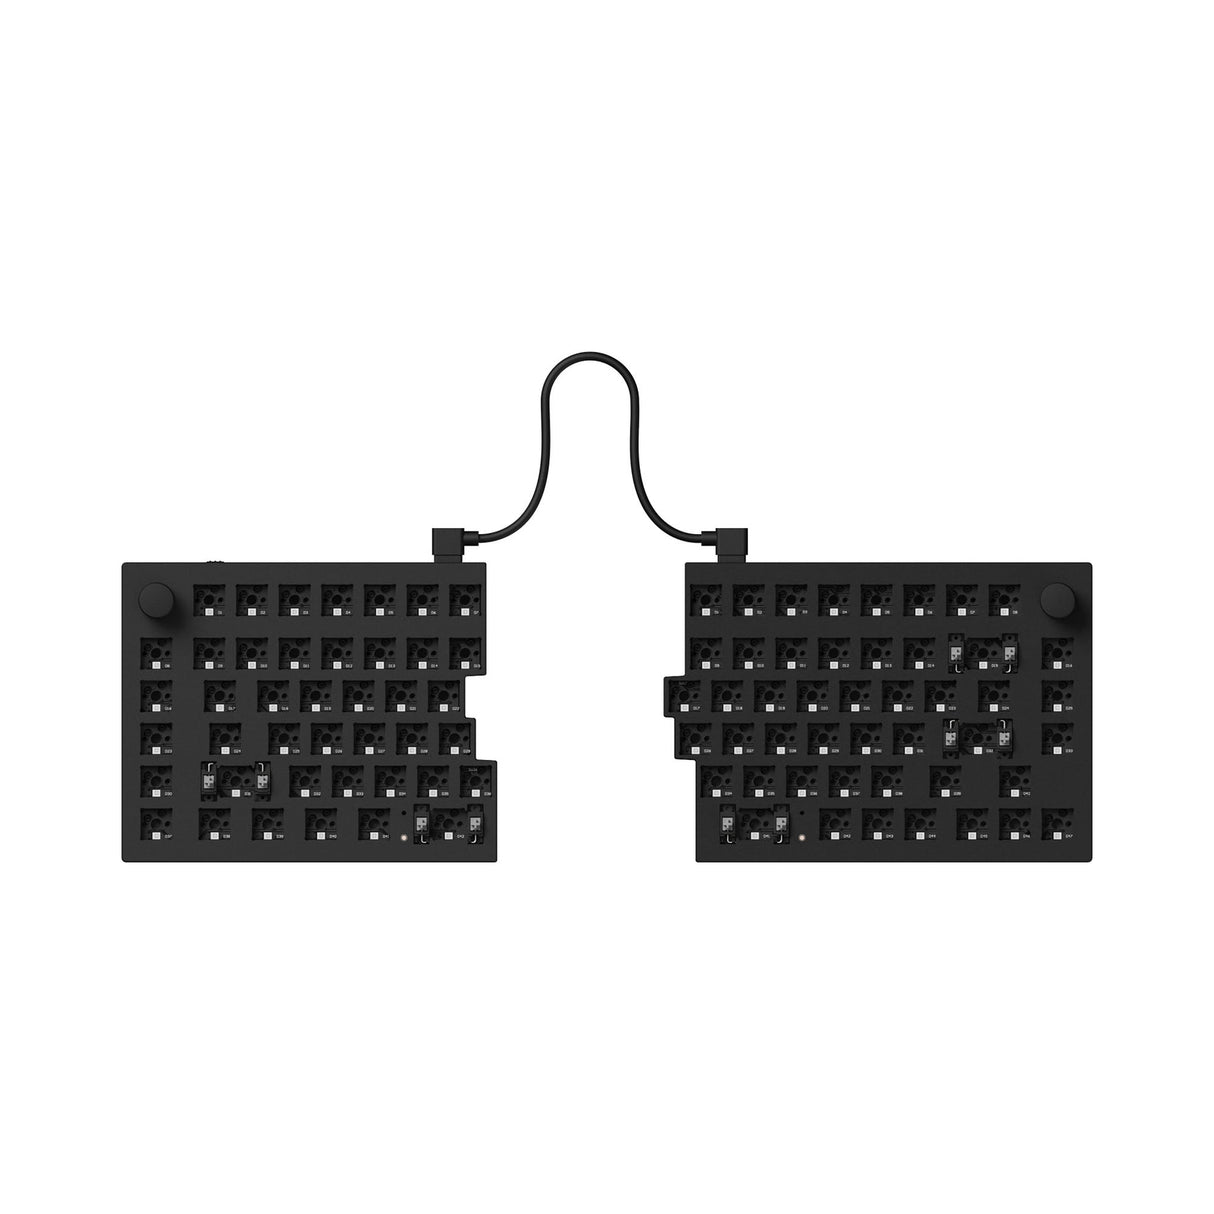 Keychron Q11 QMK Custom Mechanical Keyboard